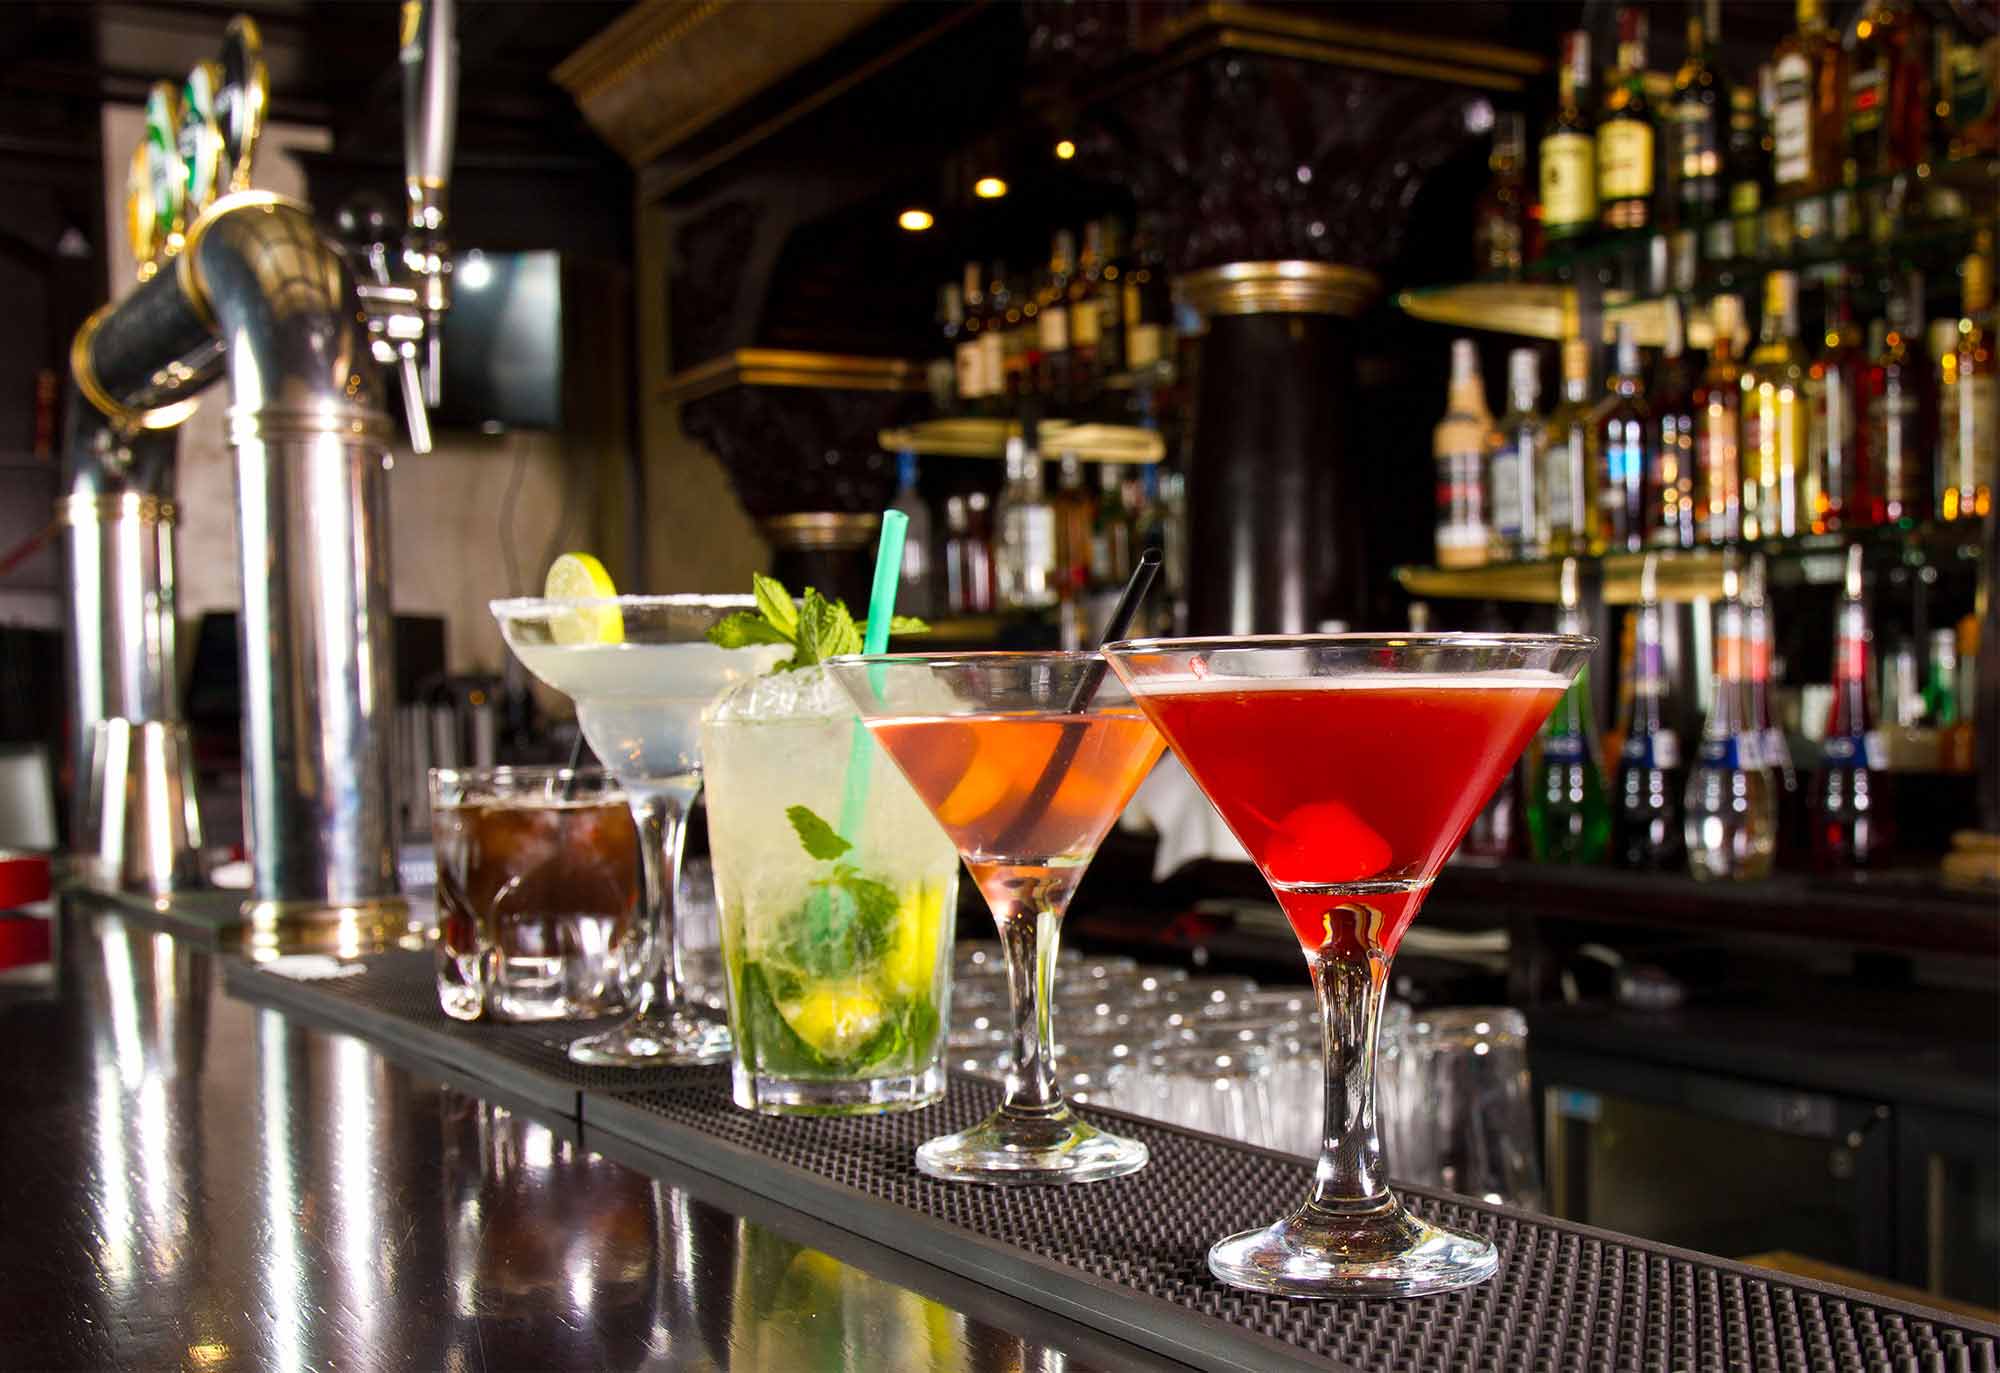 Restaurant Management Tips: Putting Together a Drinks/Bar Menu